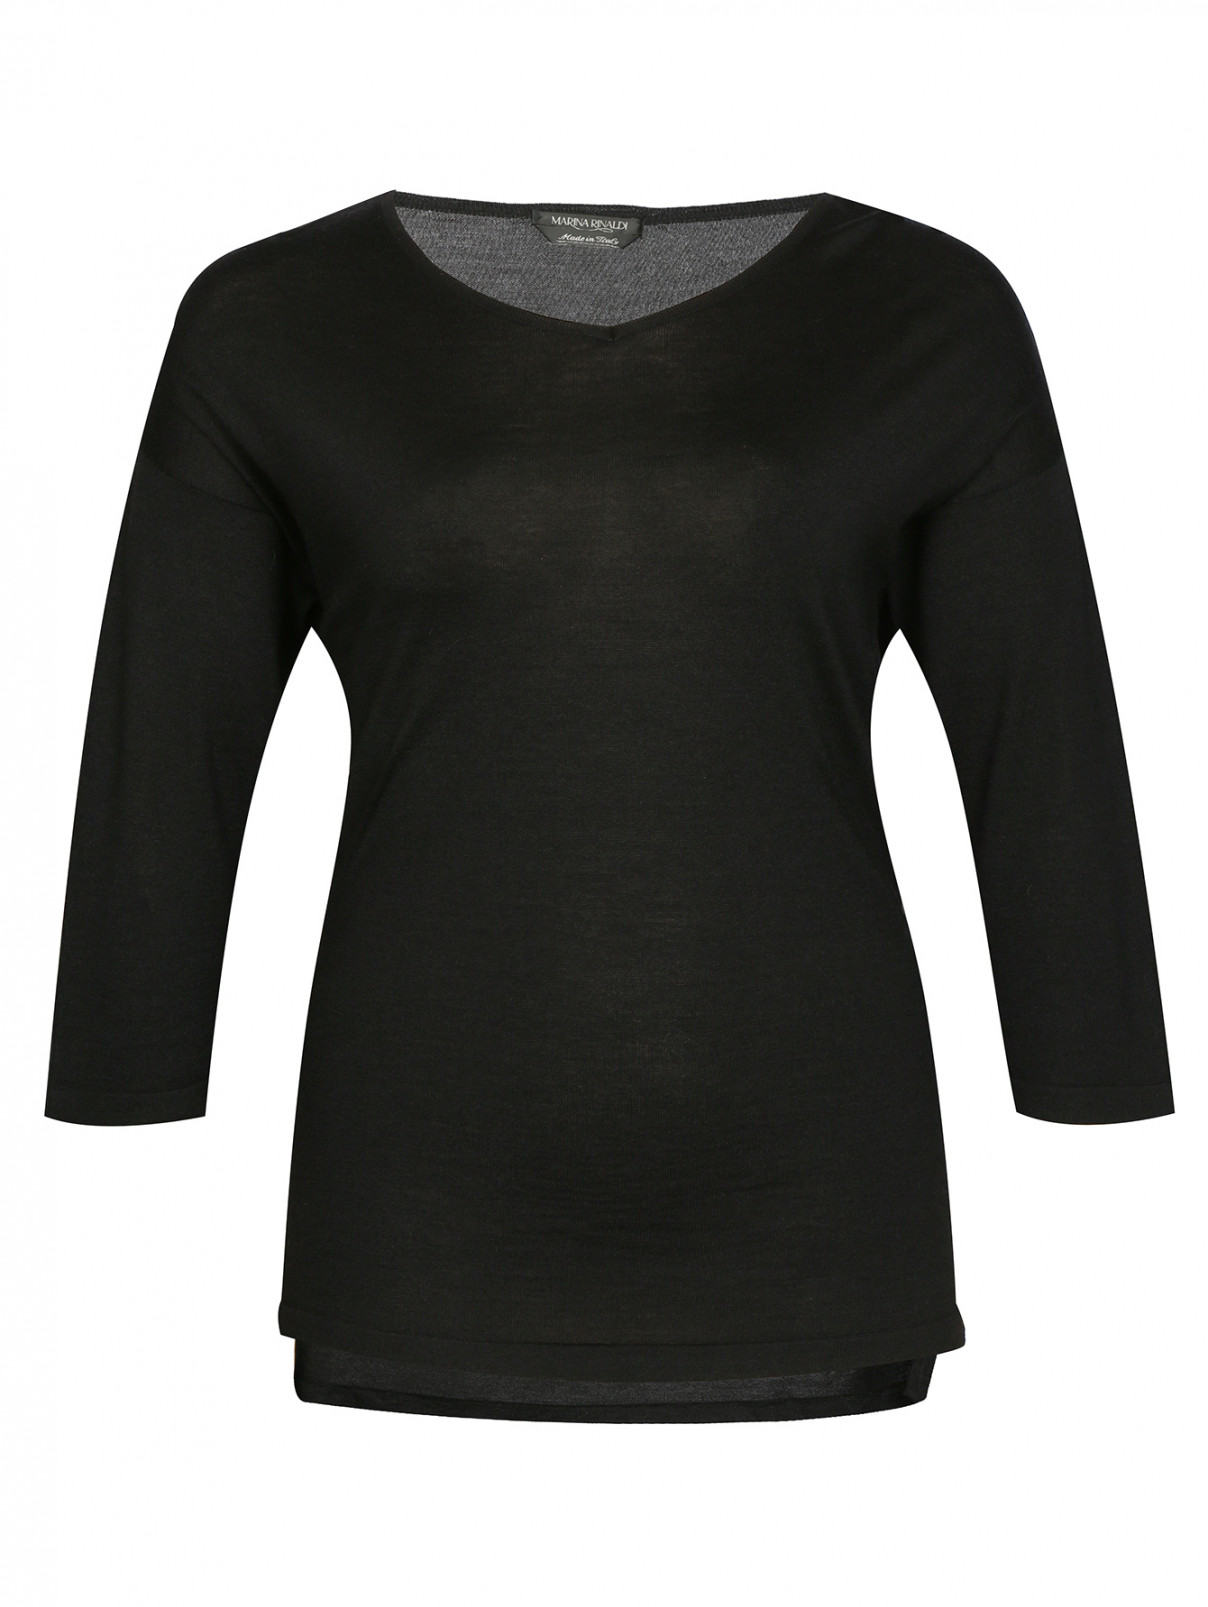 Удлиненный джемпер из шерсти и шелка Marina Rinaldi  –  Общий вид  – Цвет:  Черный